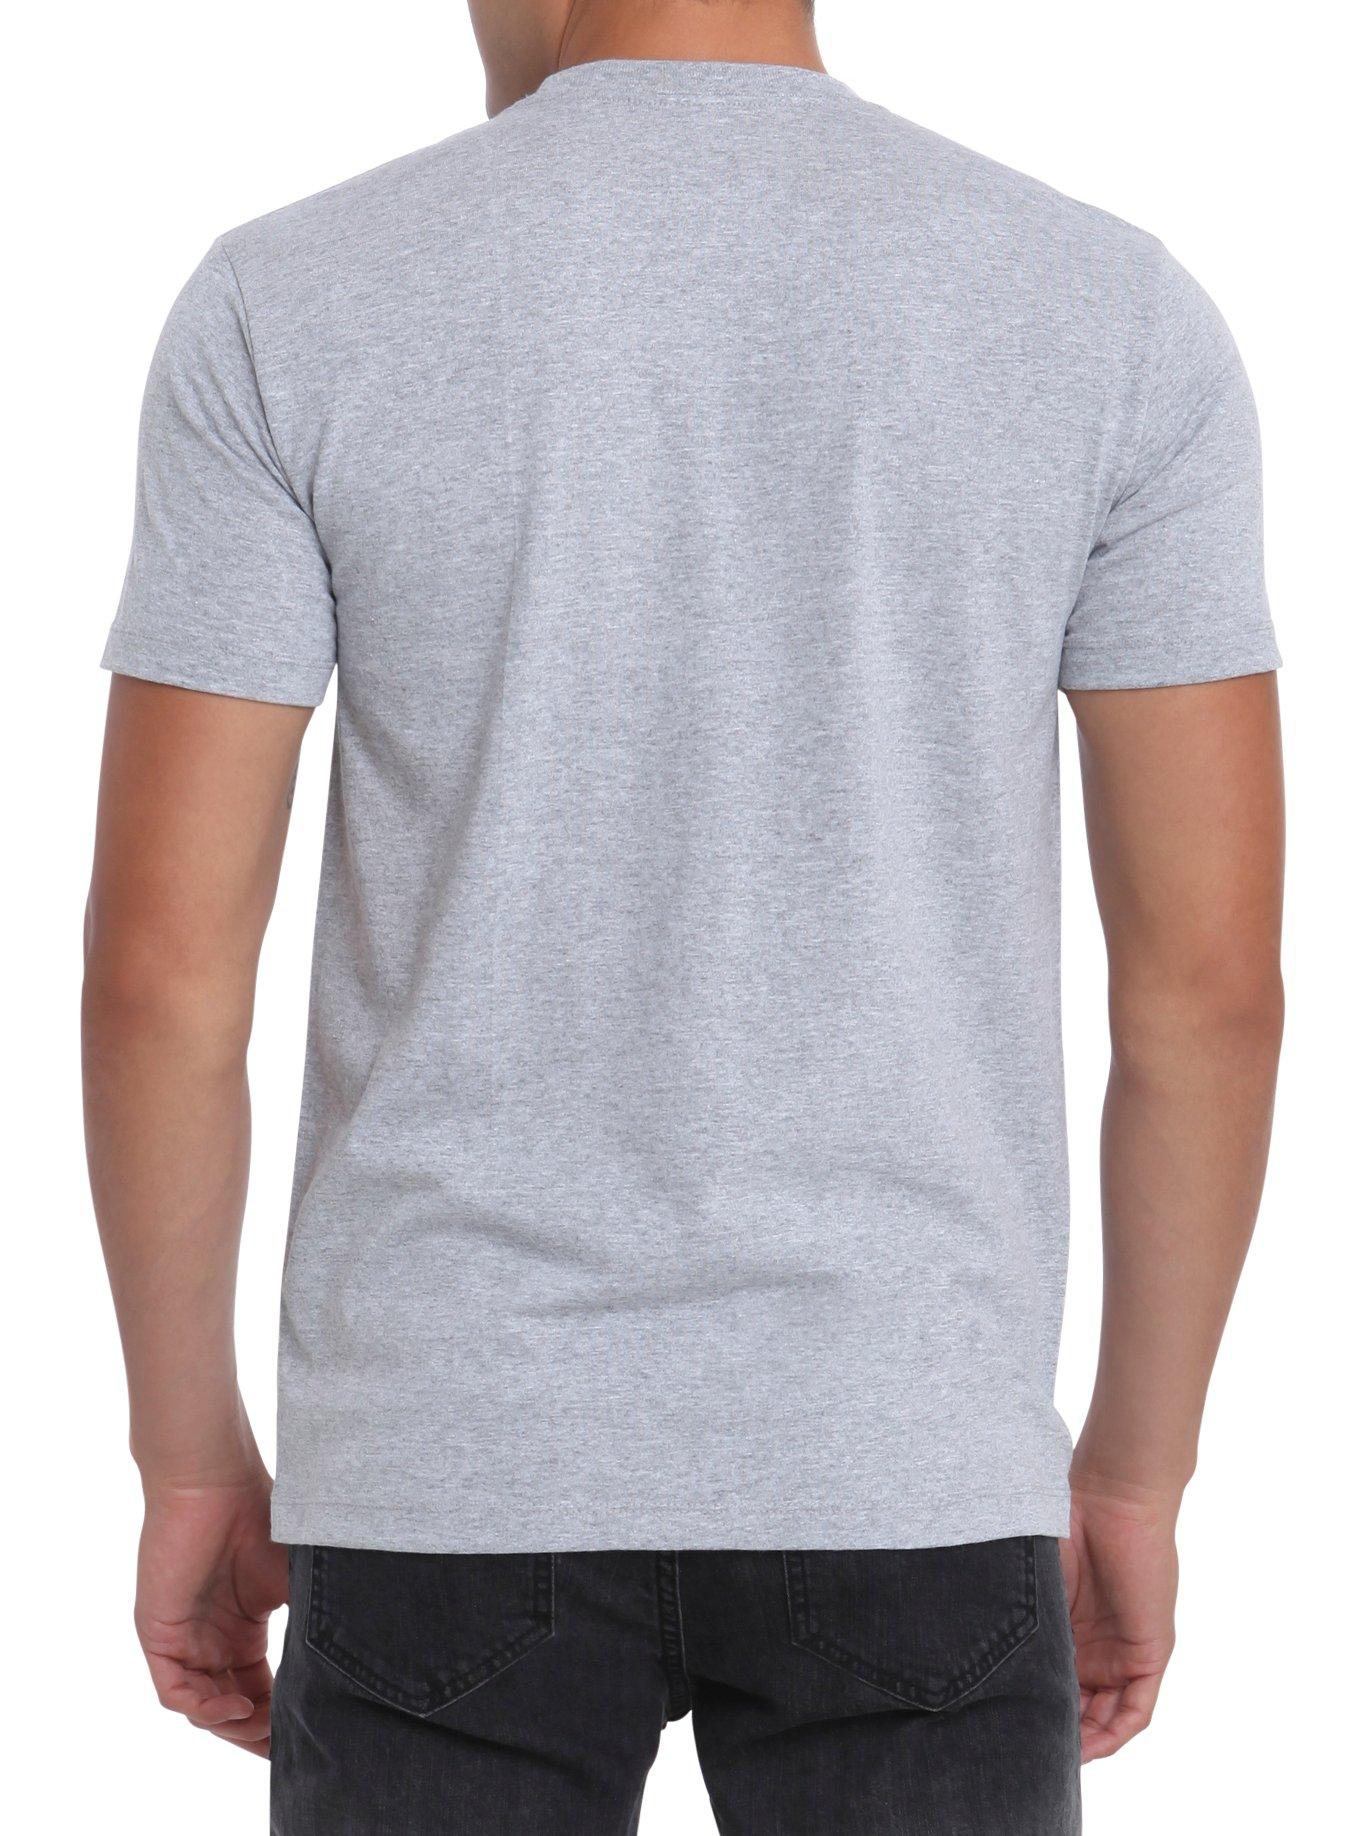 Gravity Falls Bewarb! Dipper T-Shirt, , alternate